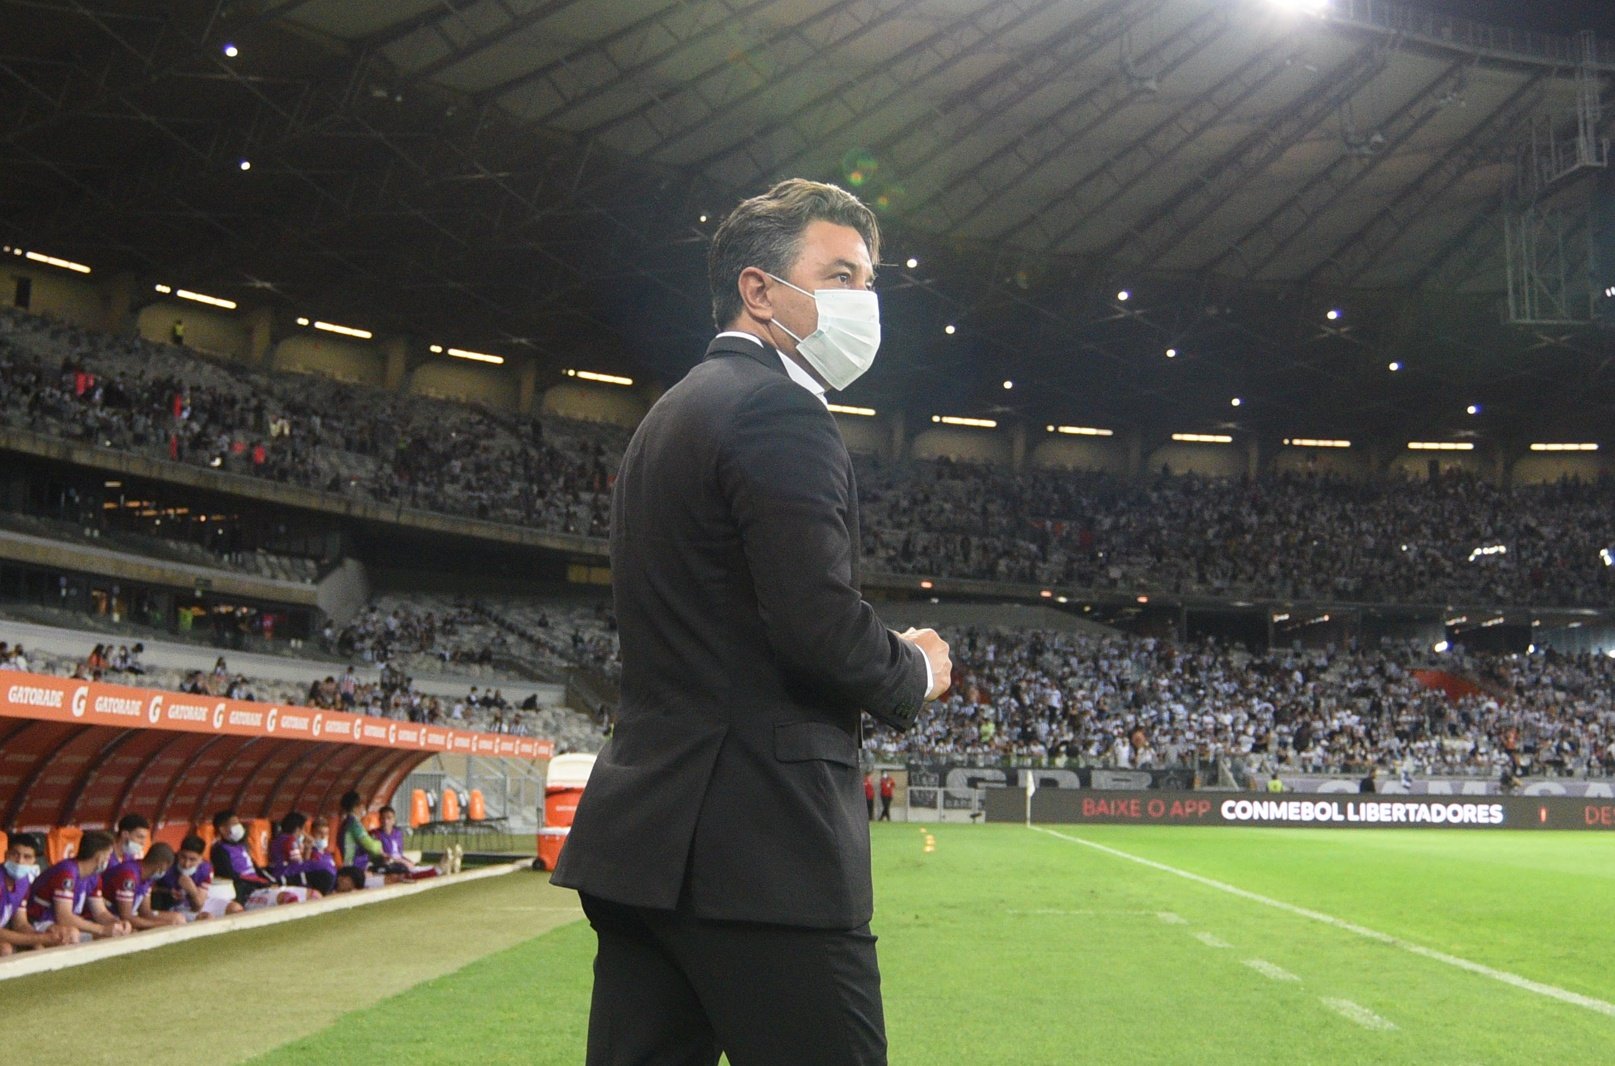 “Hay que ver si el entrenador tiene fuerzas para seguir compitiendo", indicaron desde el entorno del entrenador. (Foto: River Plate)